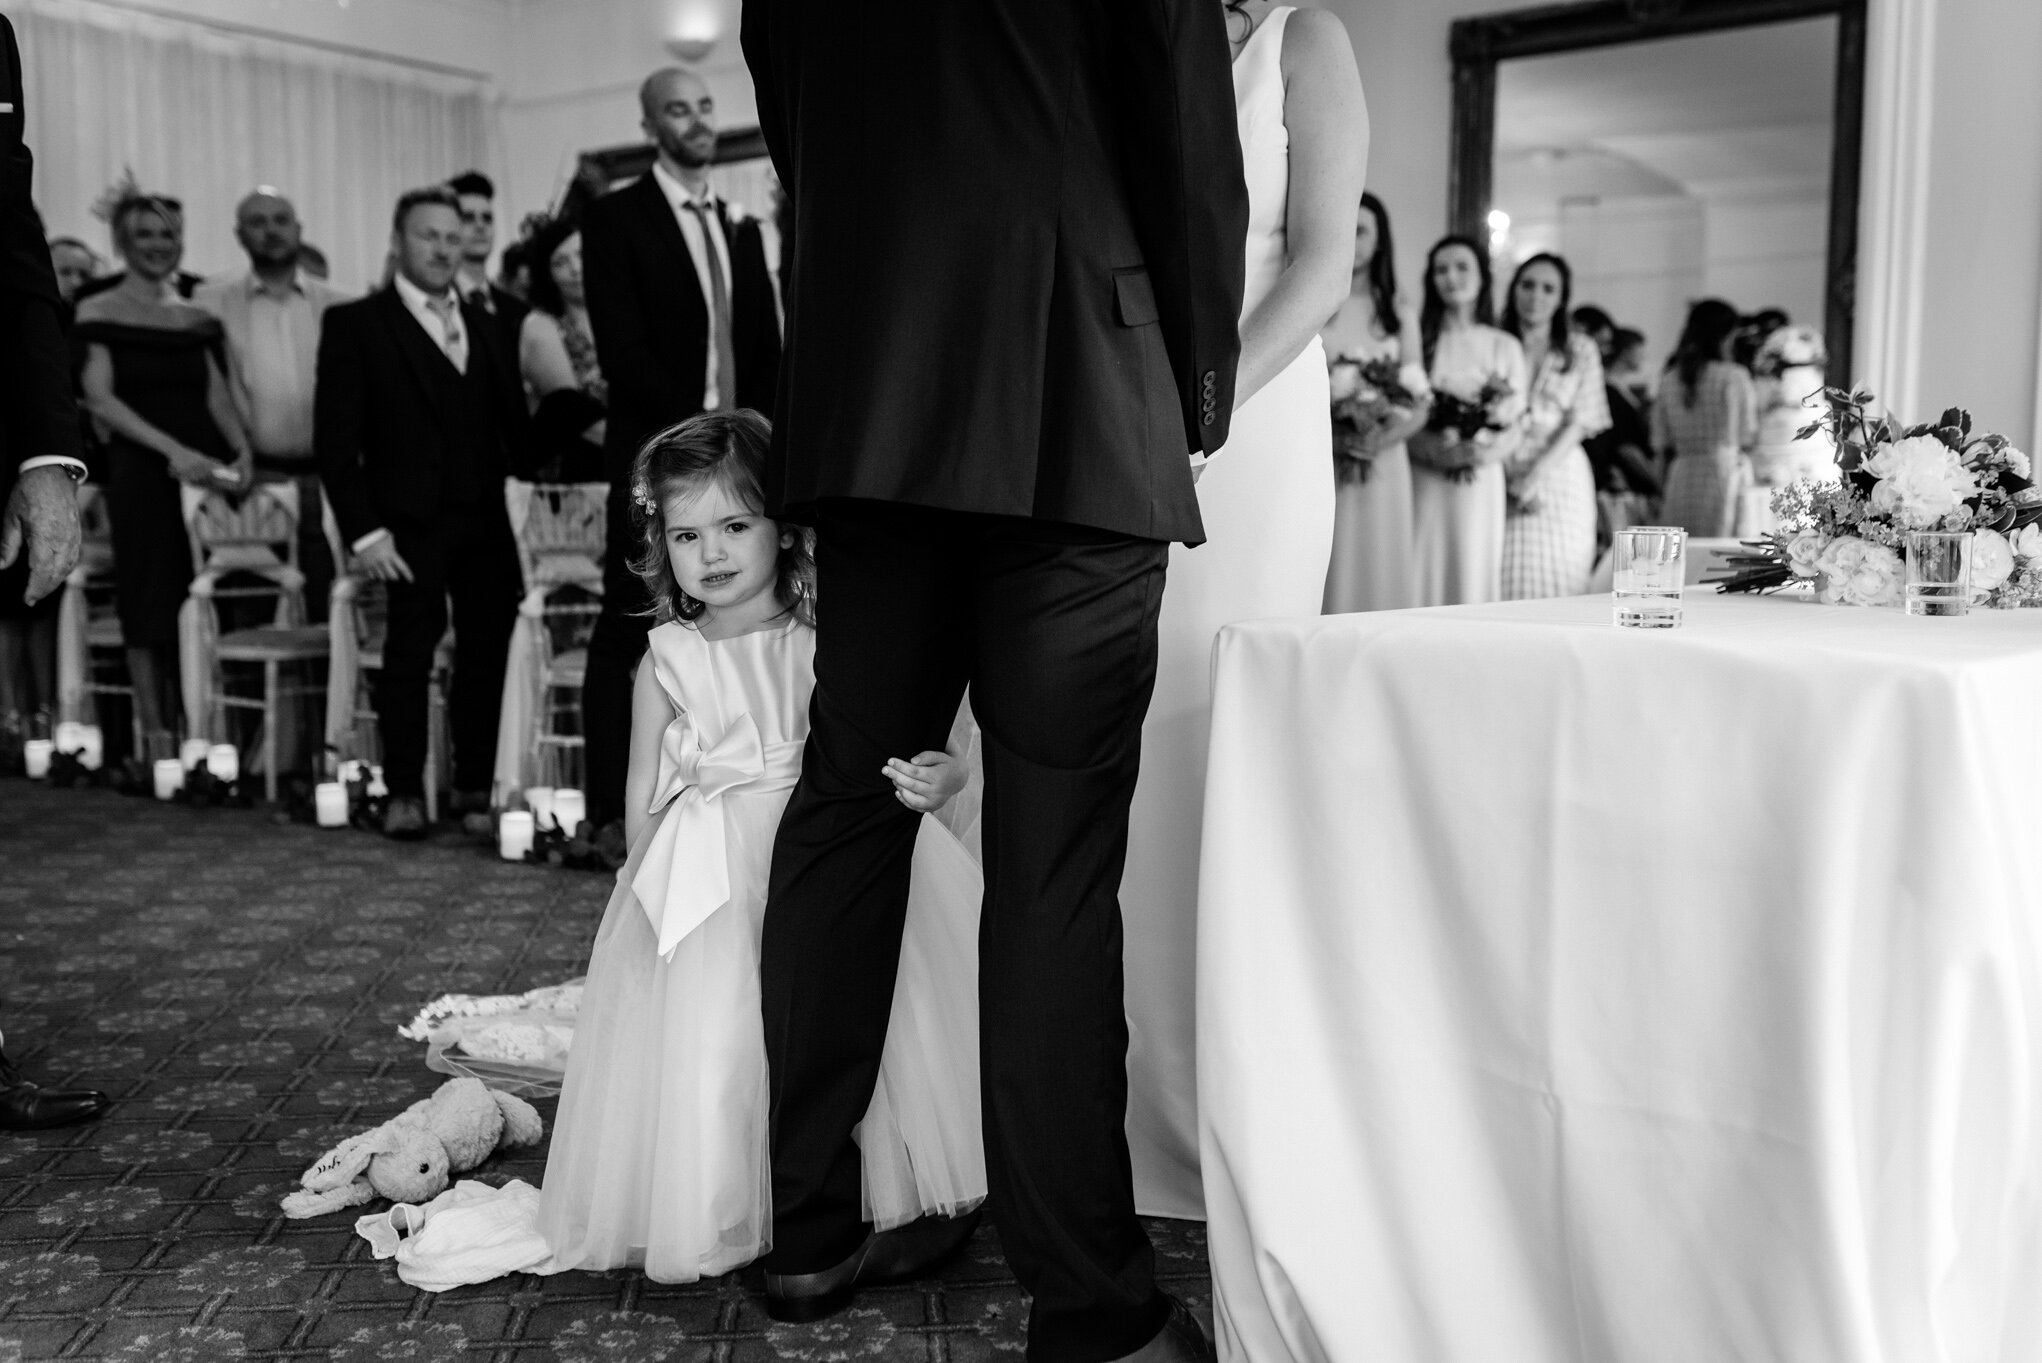 Daughter holding dads leg during wedding